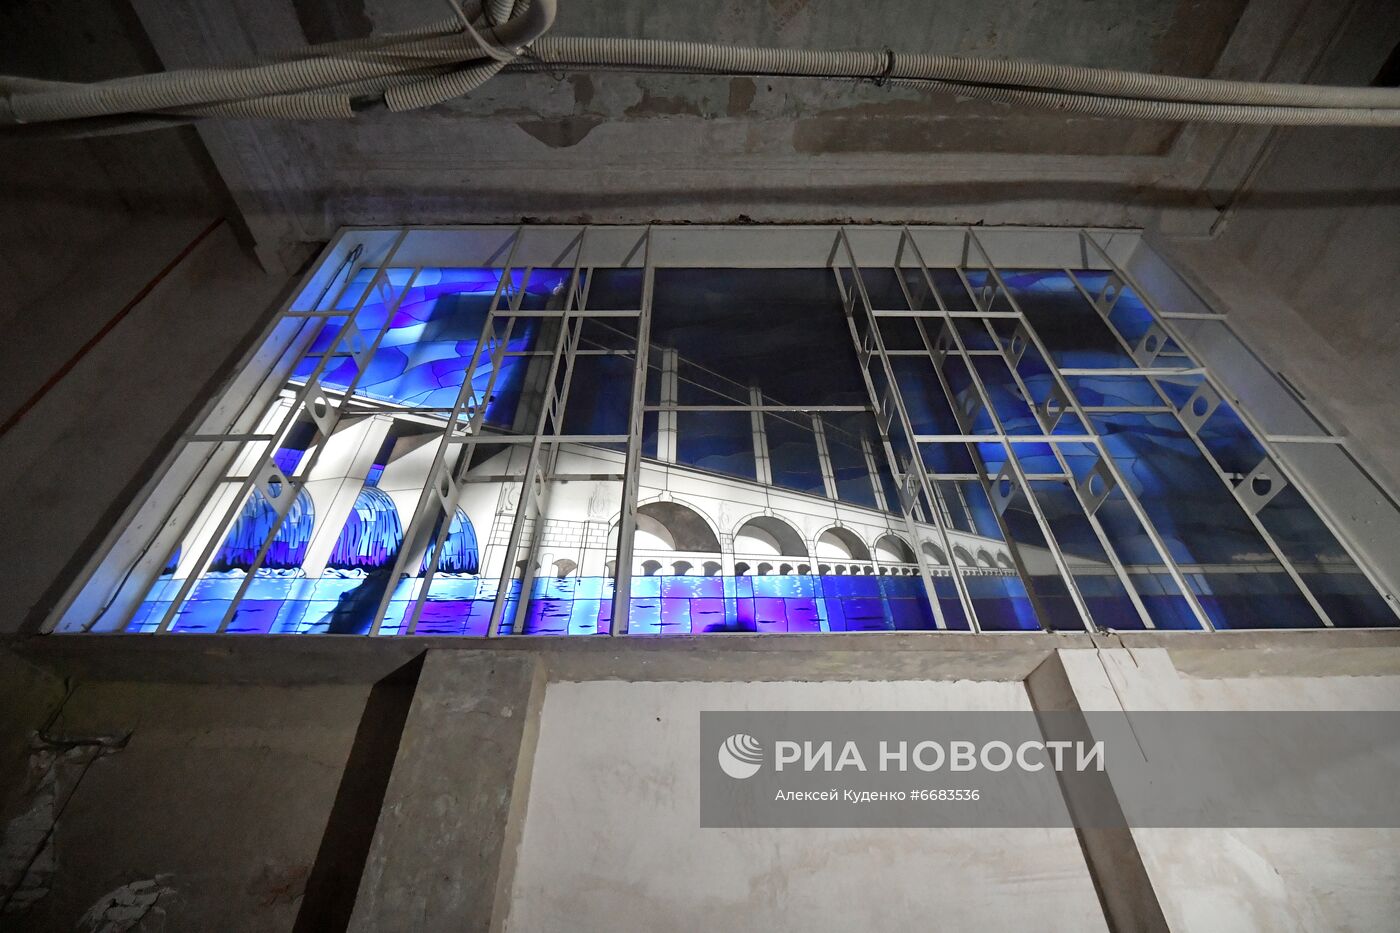 Реставрация павильона "Радиоэлектроника и связь" на ВДНХ